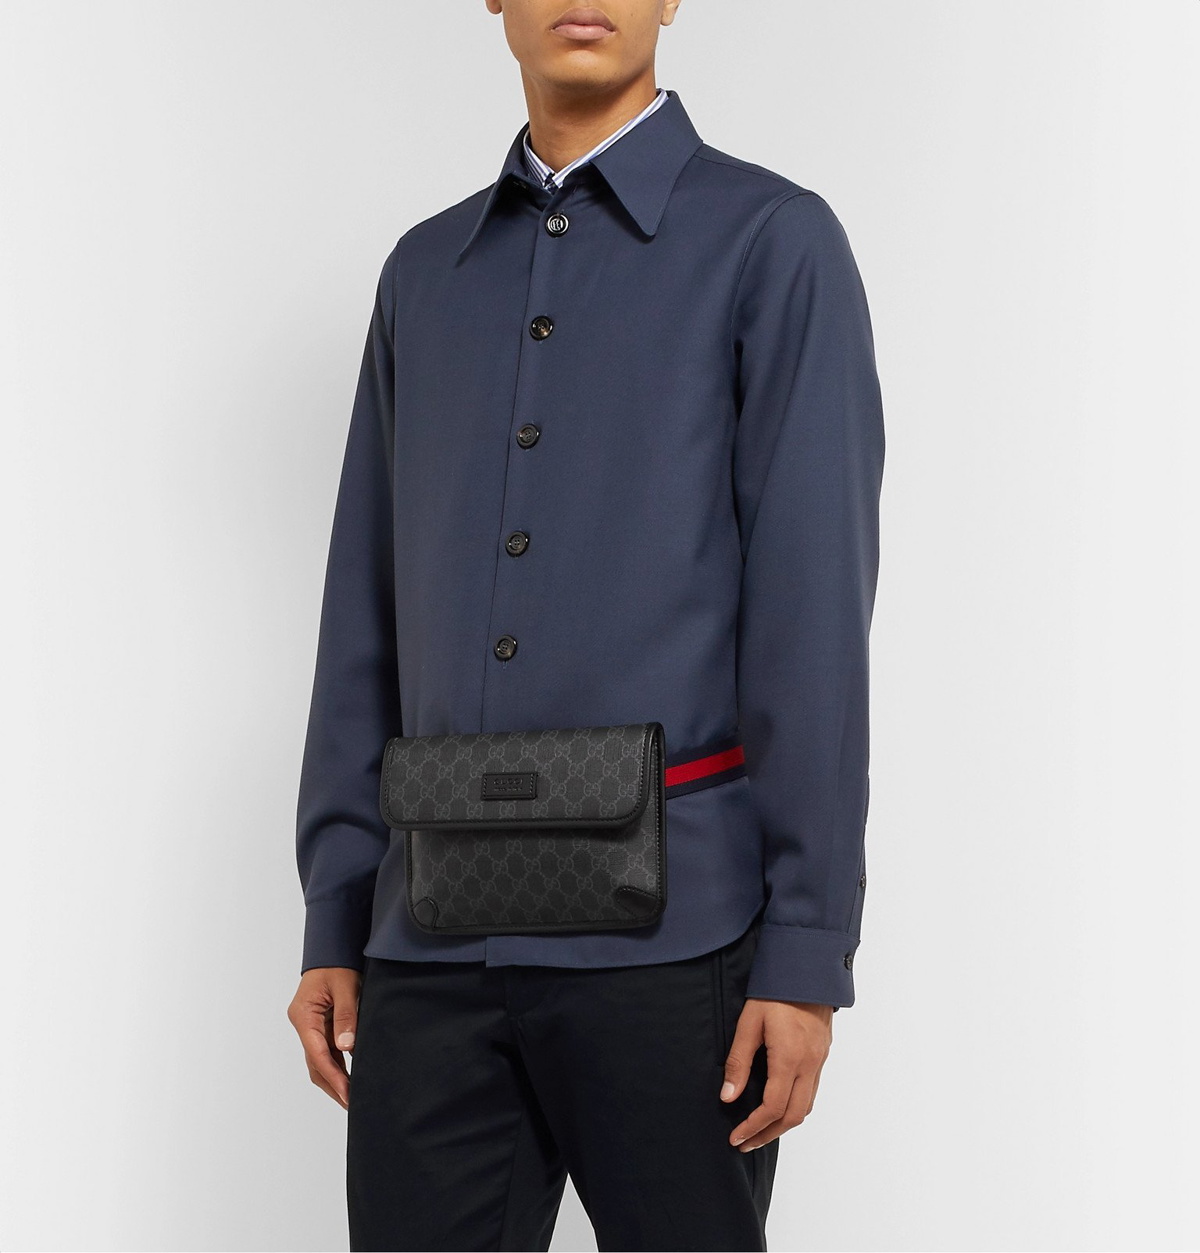 GUCCI Leather-Trimmed Monogrammed Coated-Canvas Belt Bag for Men